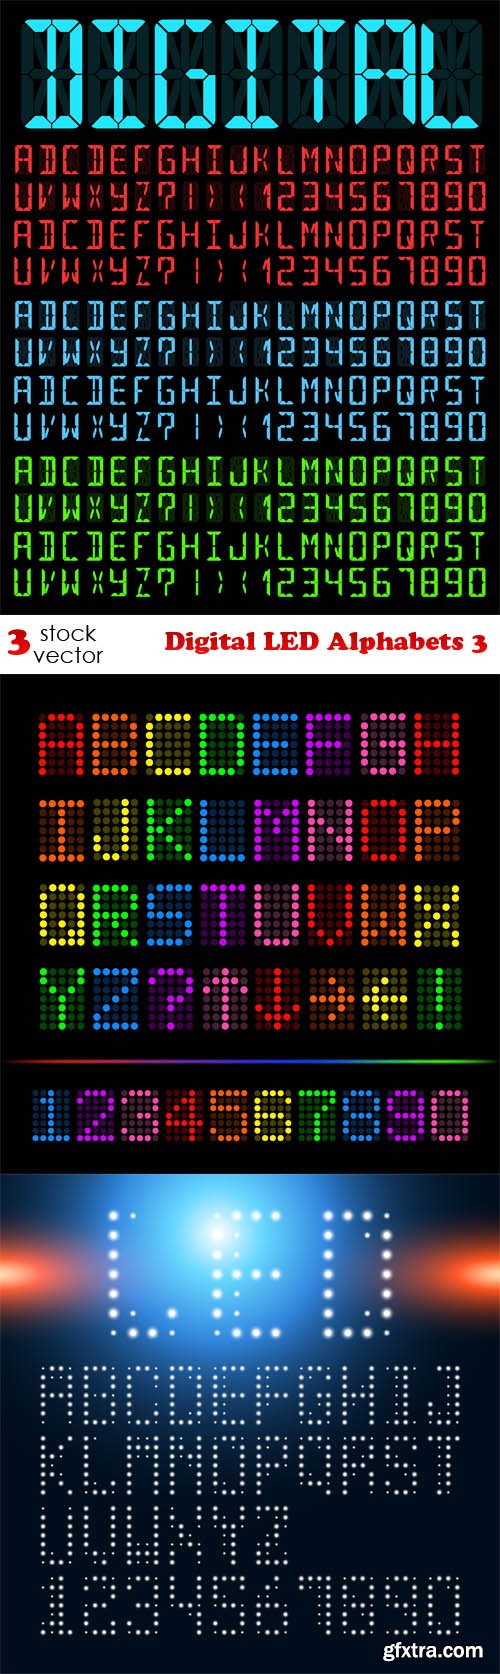 Vectors - Digital LED Alphabets 3